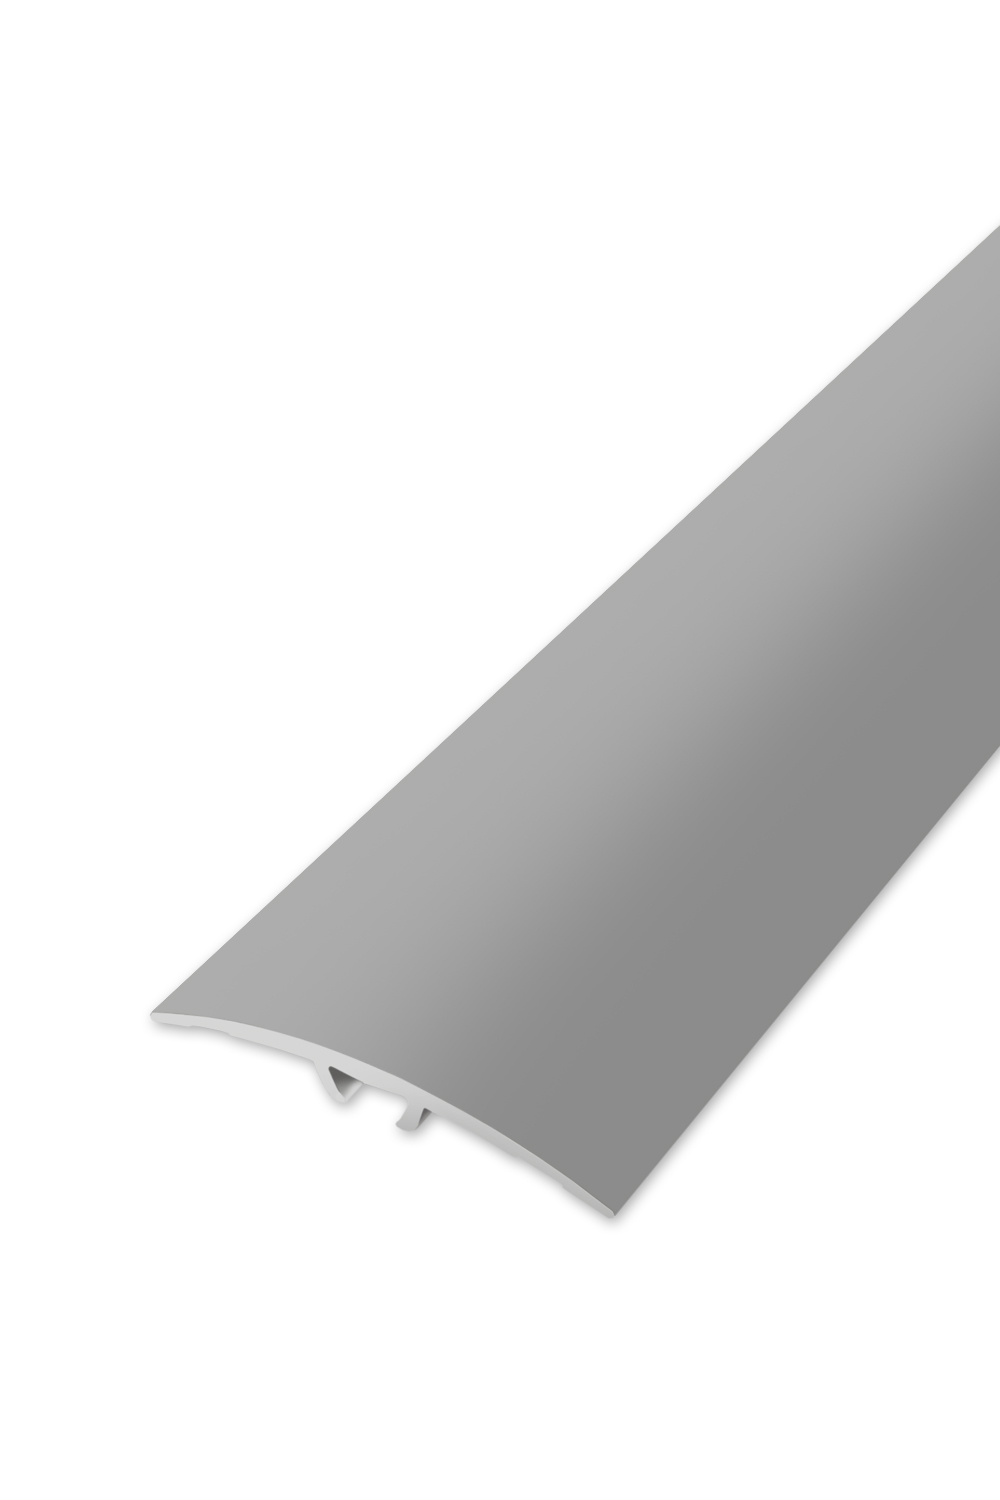 Přechodová lišta WELL 40 - Stříbrná 90 cm